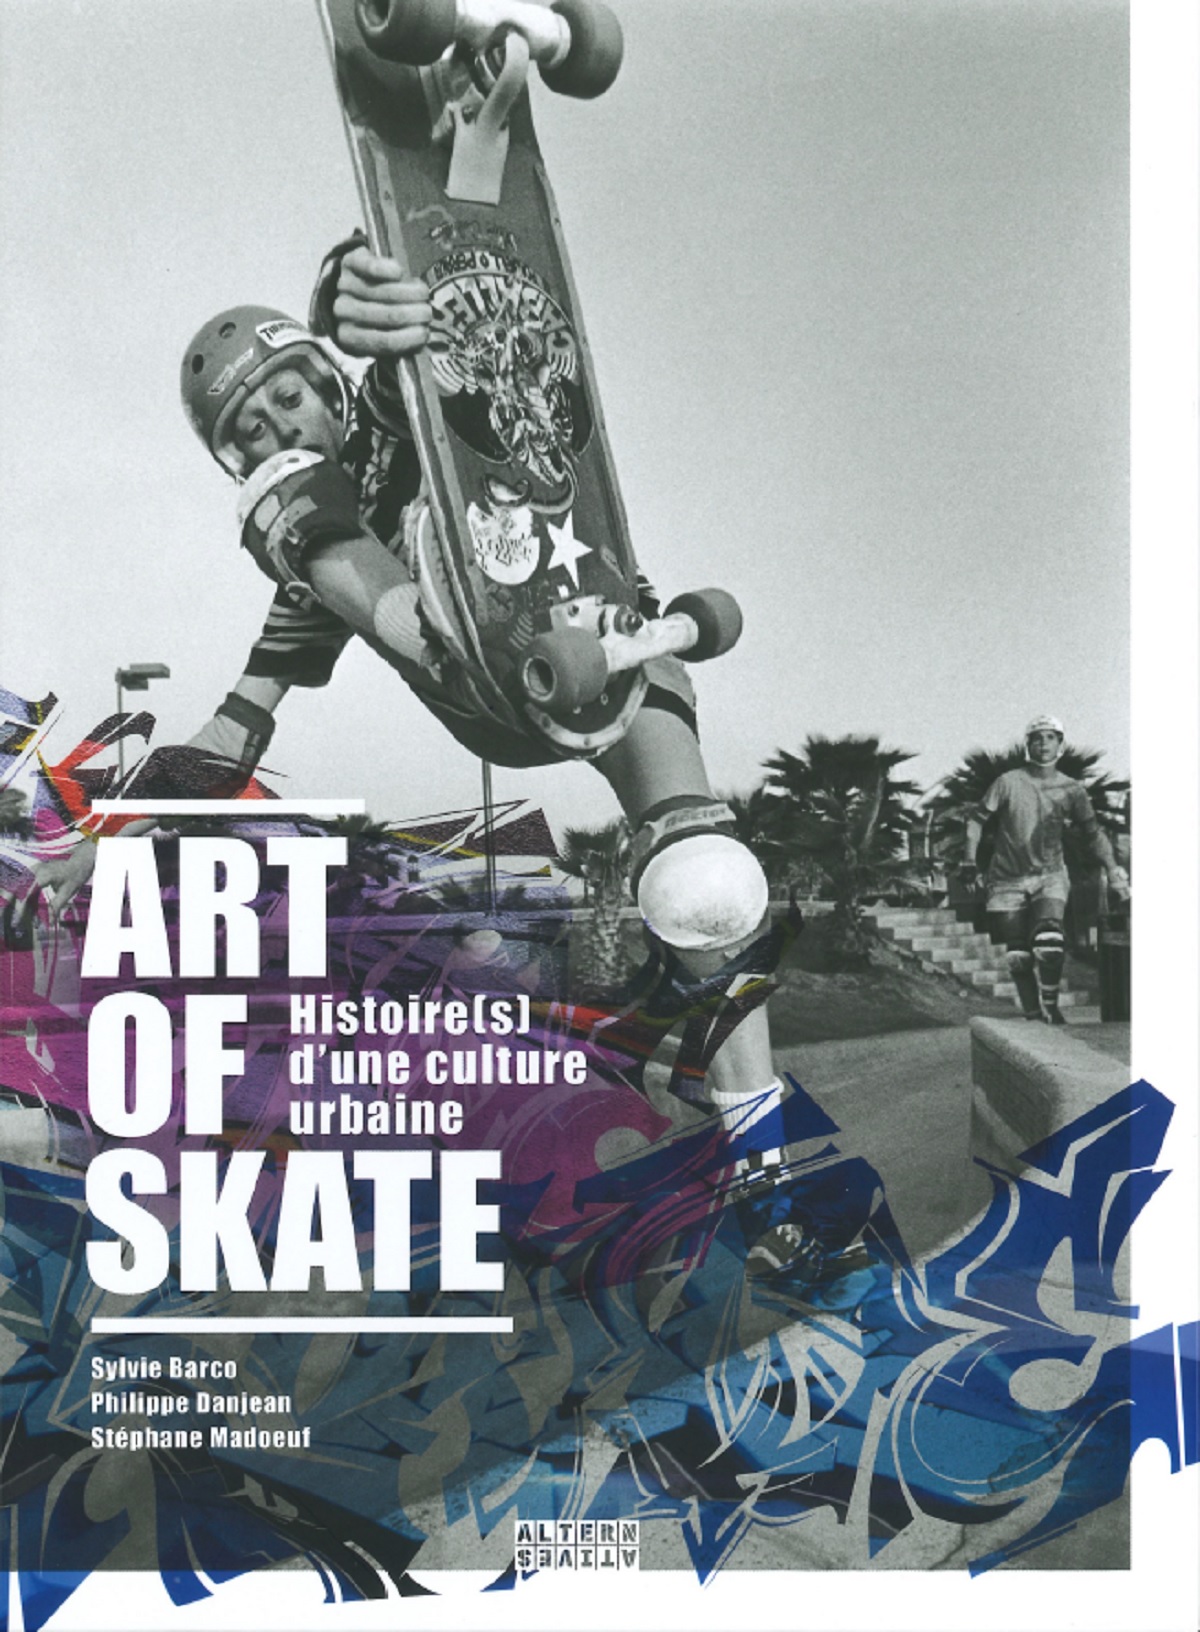 Rencontre - dédicace avec Stéphane Madoeuf, co-auteur du livre "Art of Skate"